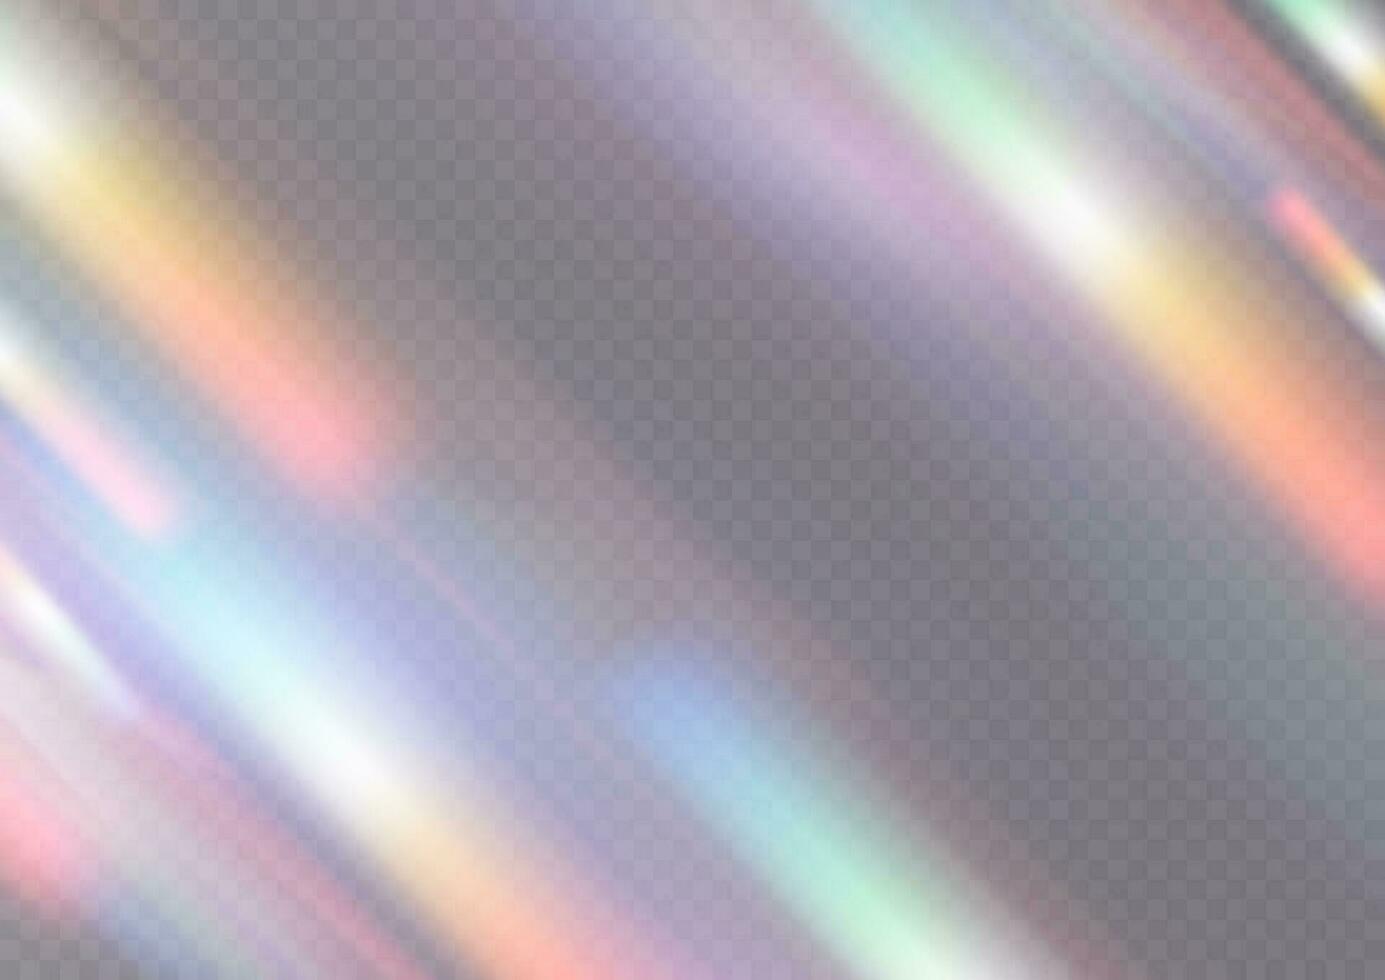 iridiscente cristal fuga destello reflexión efecto. óptico arco iris luces, destello, filtración, racha cubrir. que cae papel picado. vector vistoso vector lentes y ligero bengalas con efectos